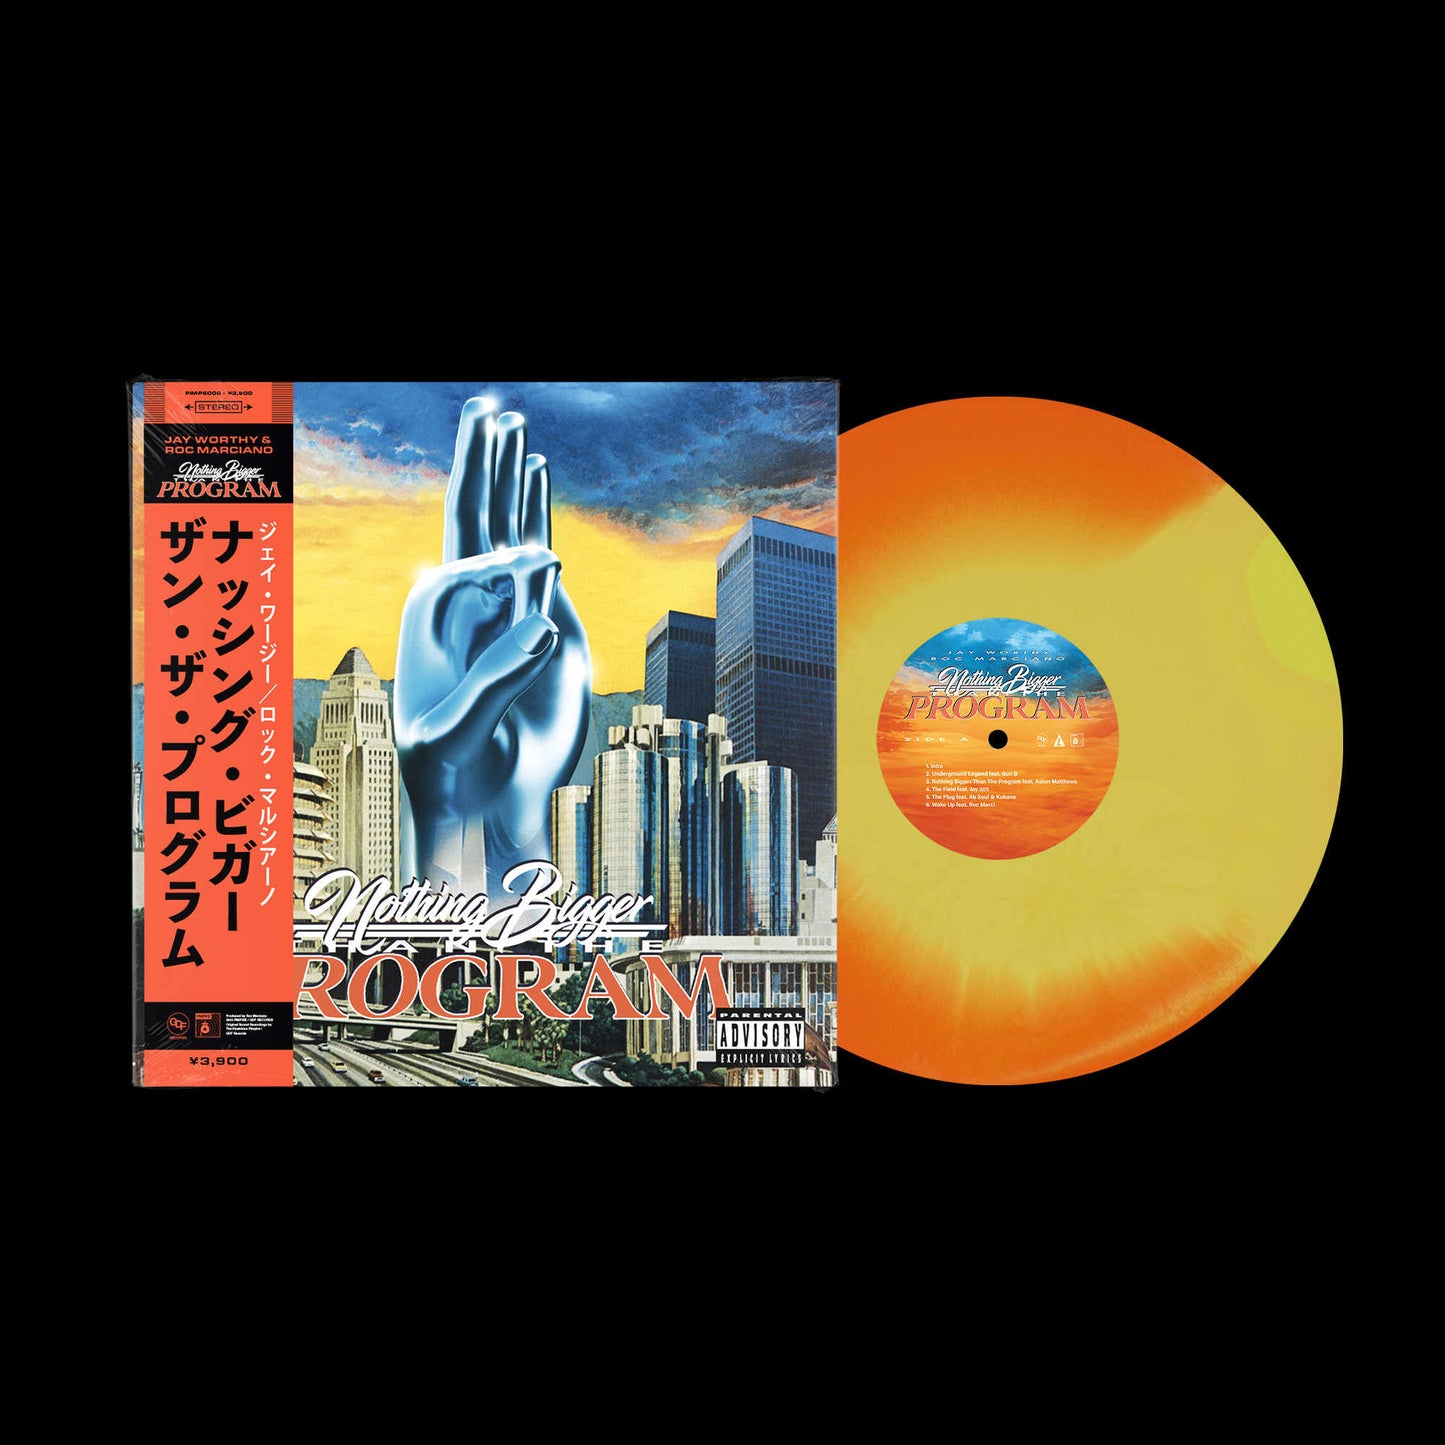 Nothing Bigger Than The Program (Orange Haze LP)